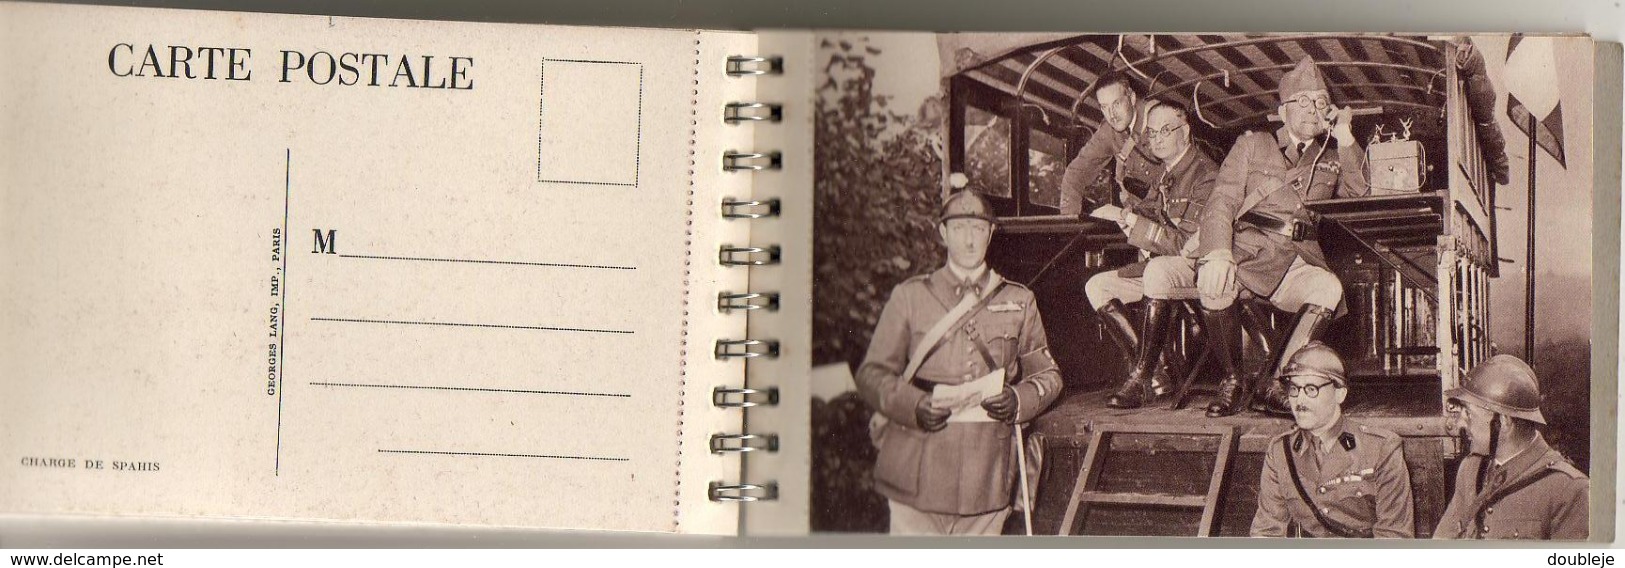 MILITARIA  SUPERBE CARNET SPIRALÉ COMPORTANT 28 Cartes Postales et un Agenda 1939 où sont présentées nos troupes